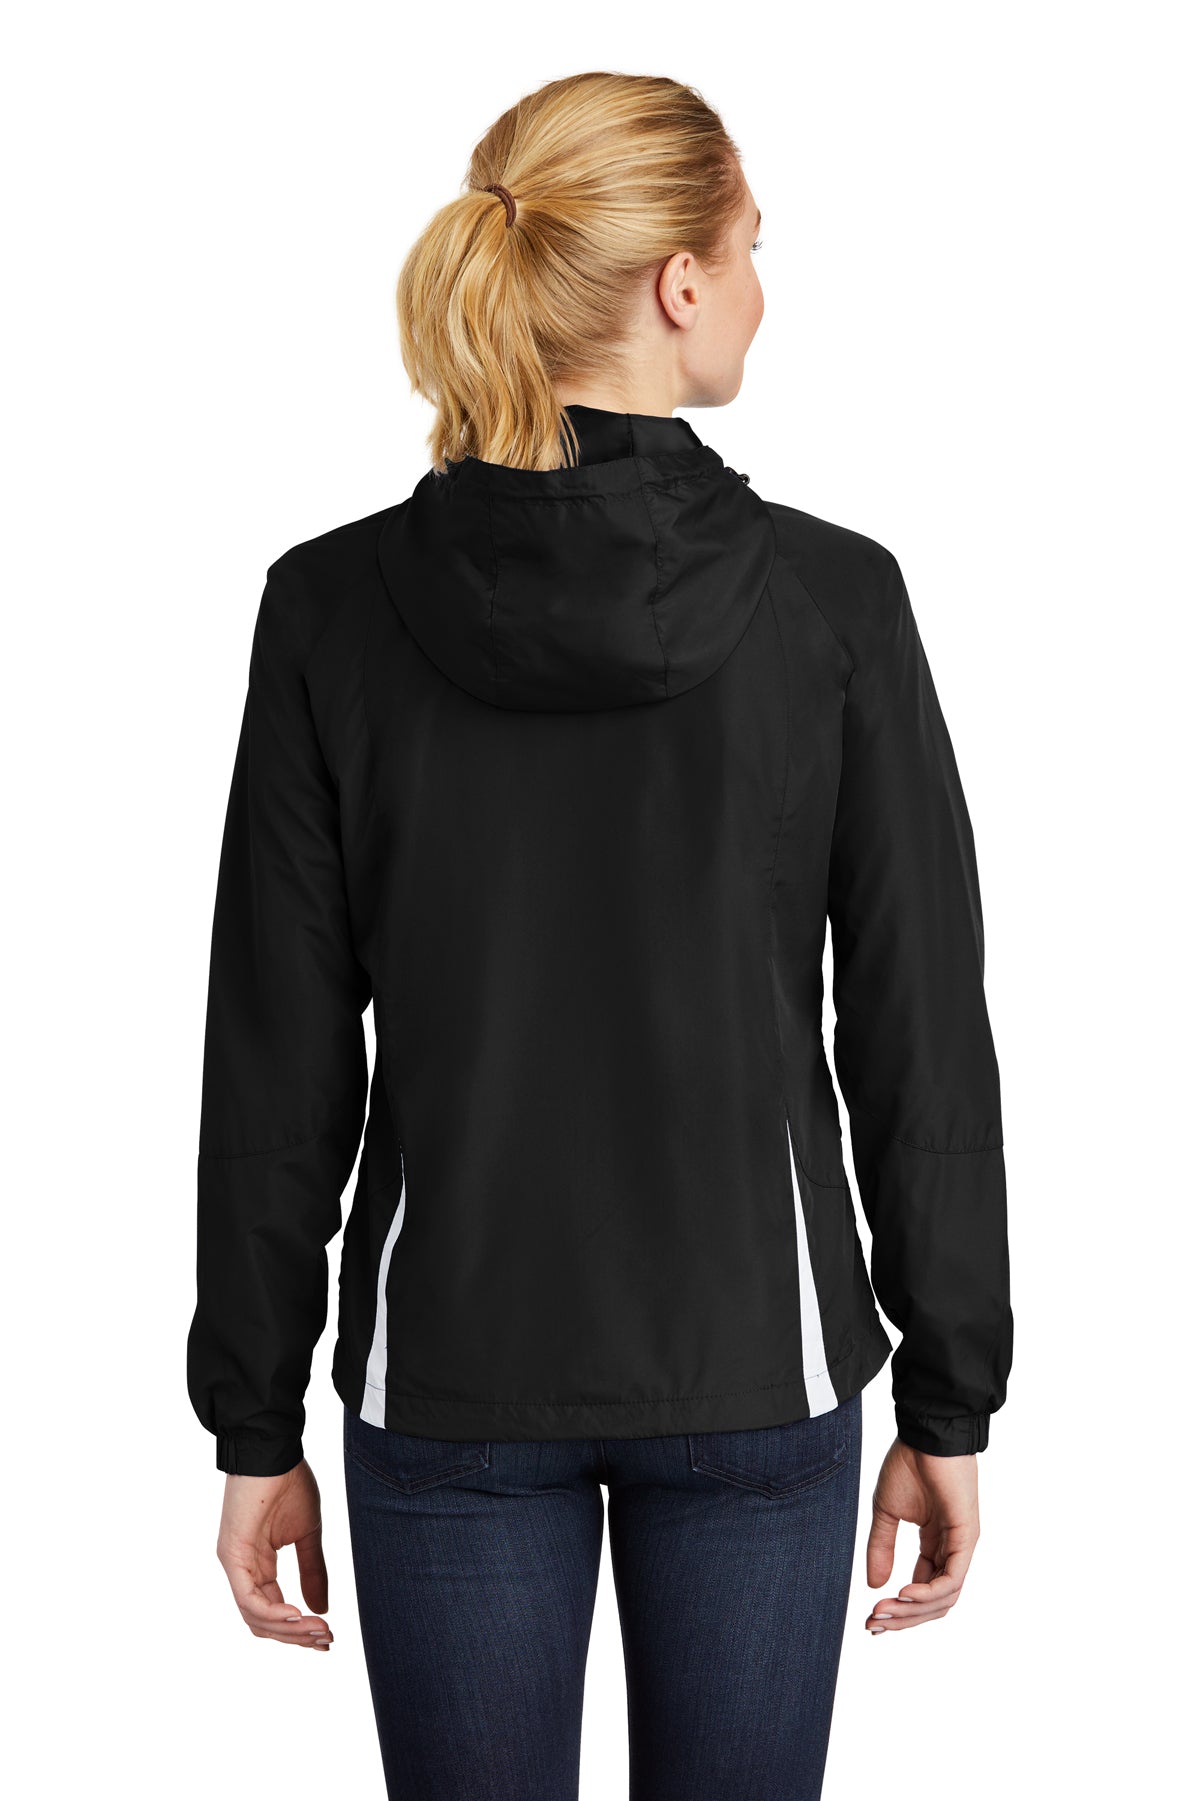 Sport Tek Women's Hooded Raglan Jacket